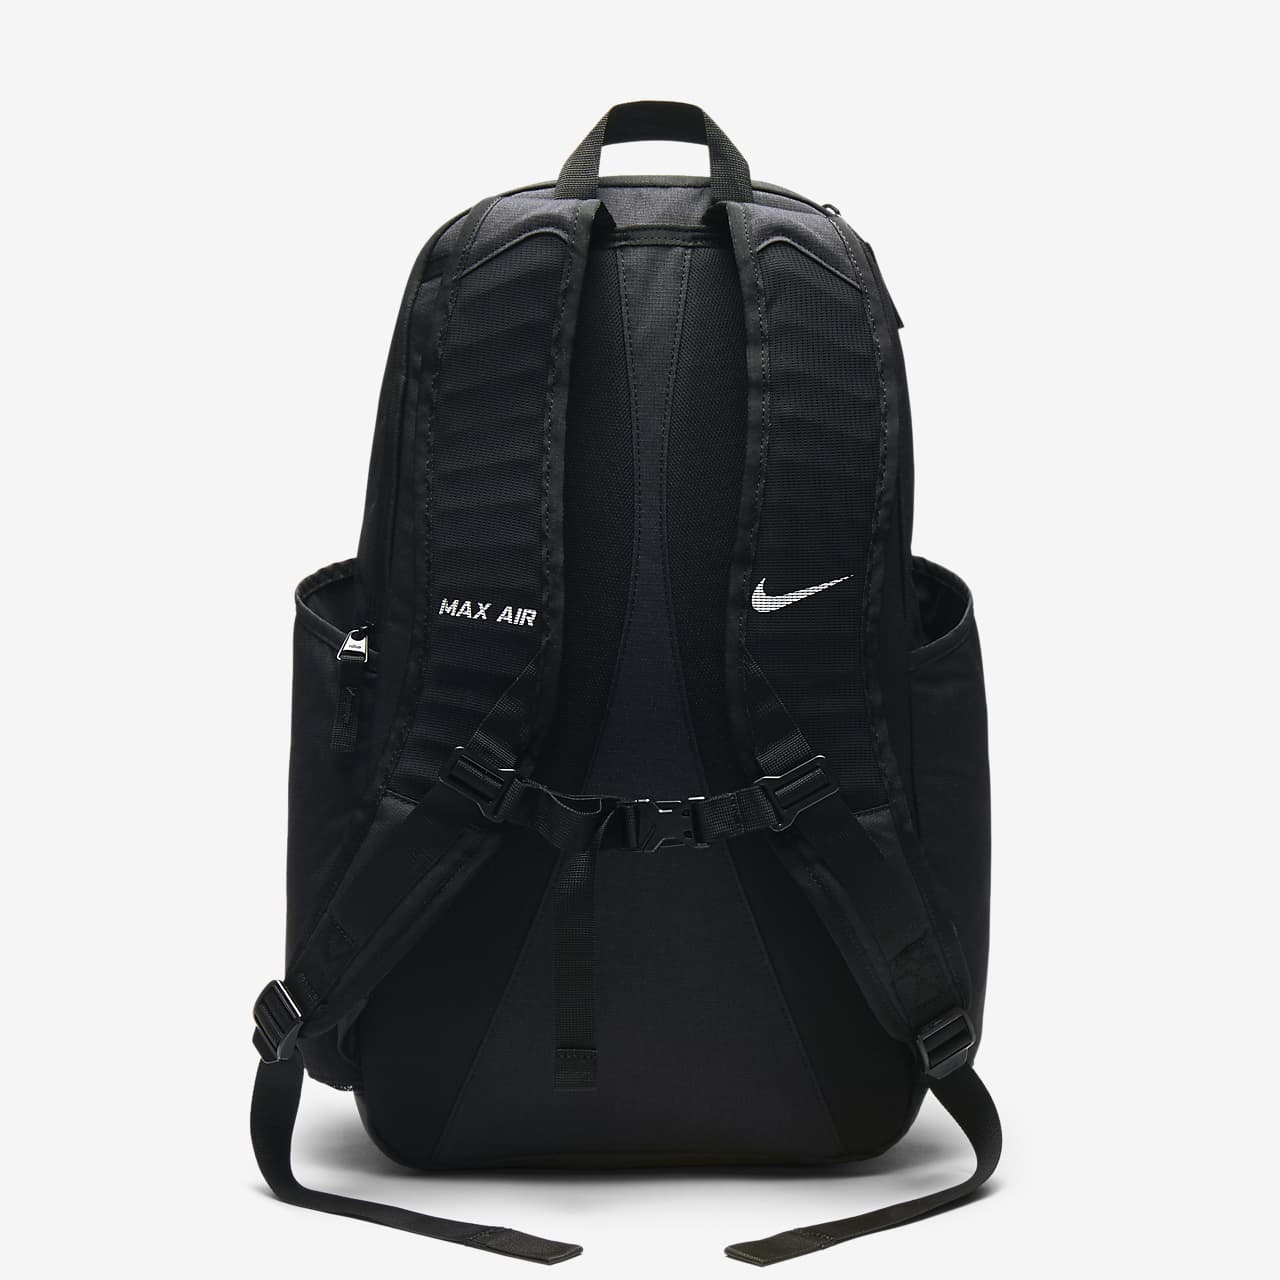 nike air backpack black